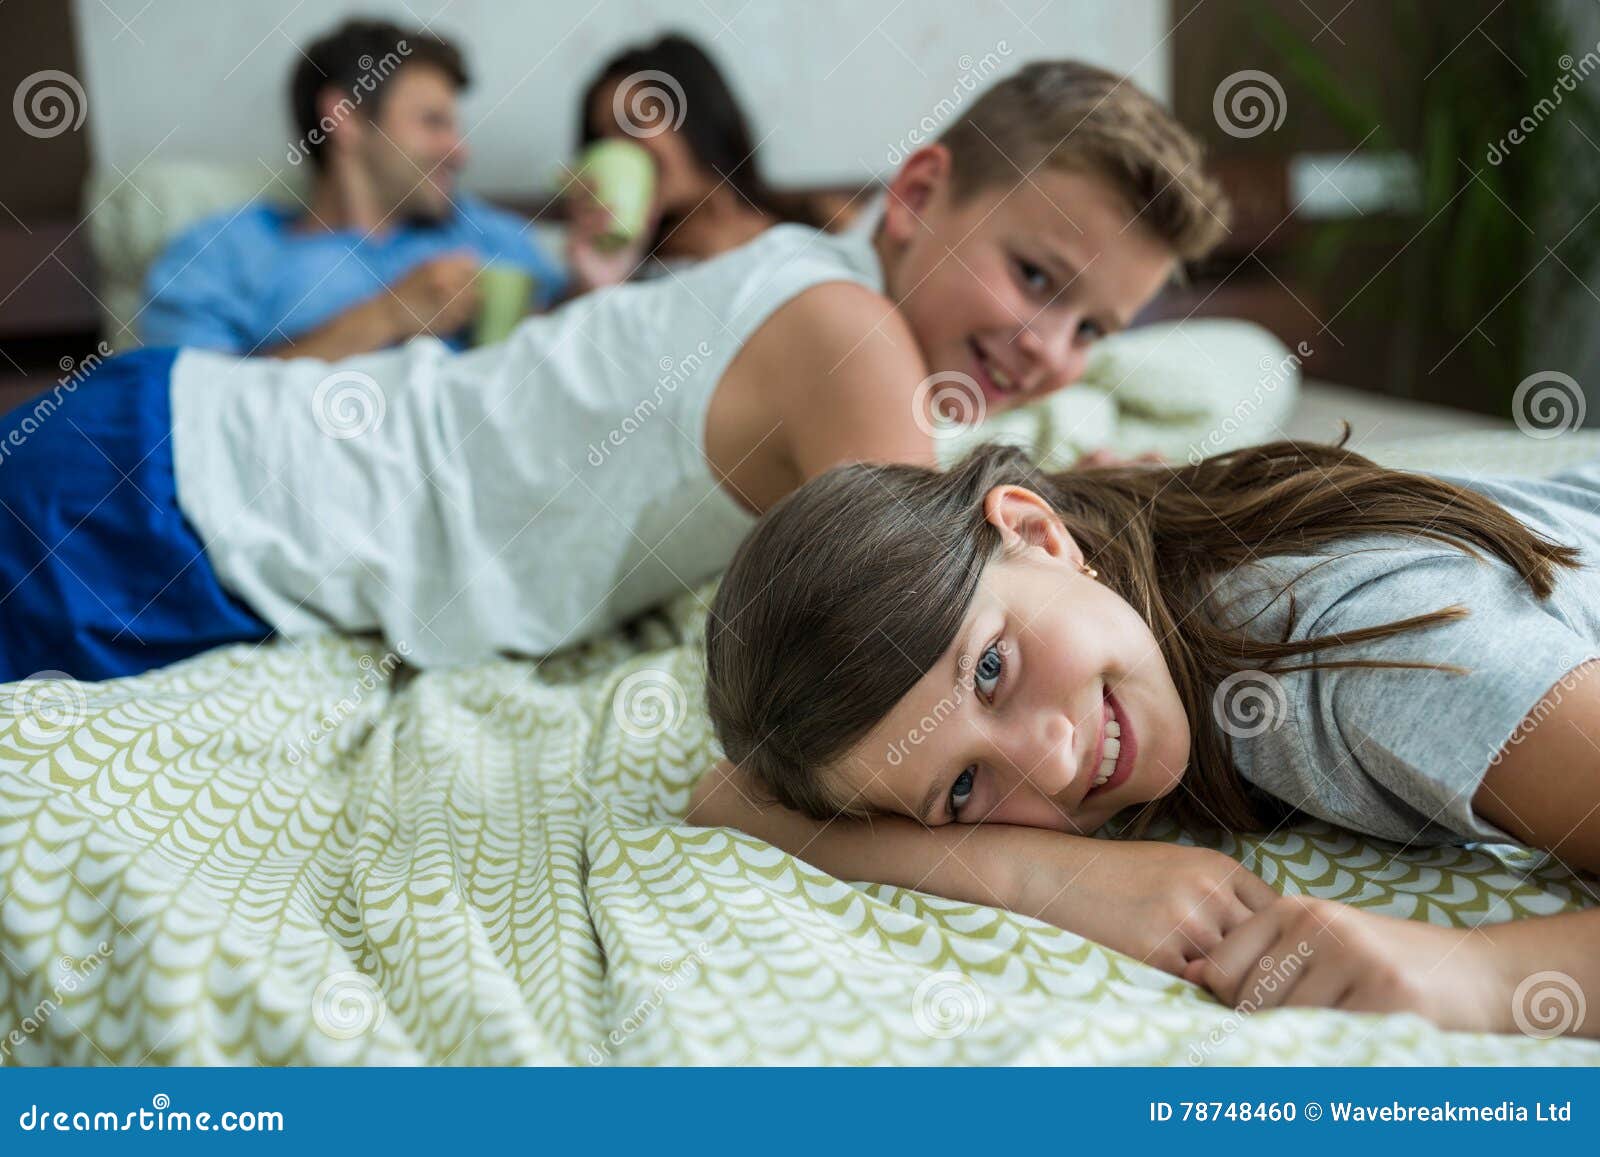 Сестра пришла брату кровать. Семья лежит на кровати. Семья валяется в постели. Семья на кровати домашнее. Family лежать на кровати.